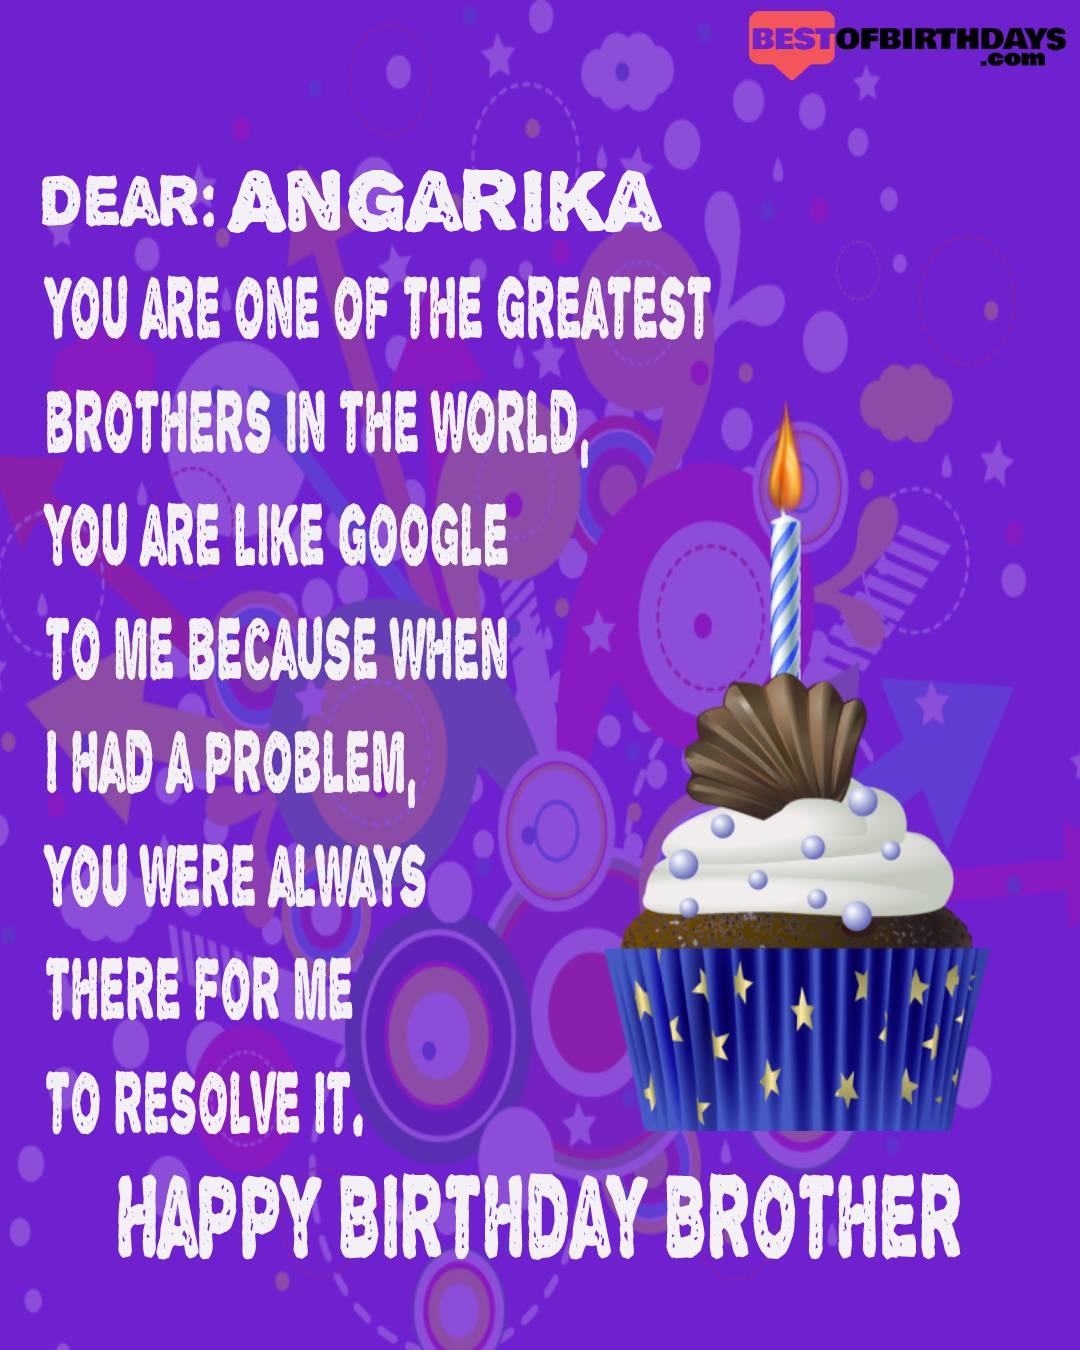 Happy birthday angarika bhai brother bro